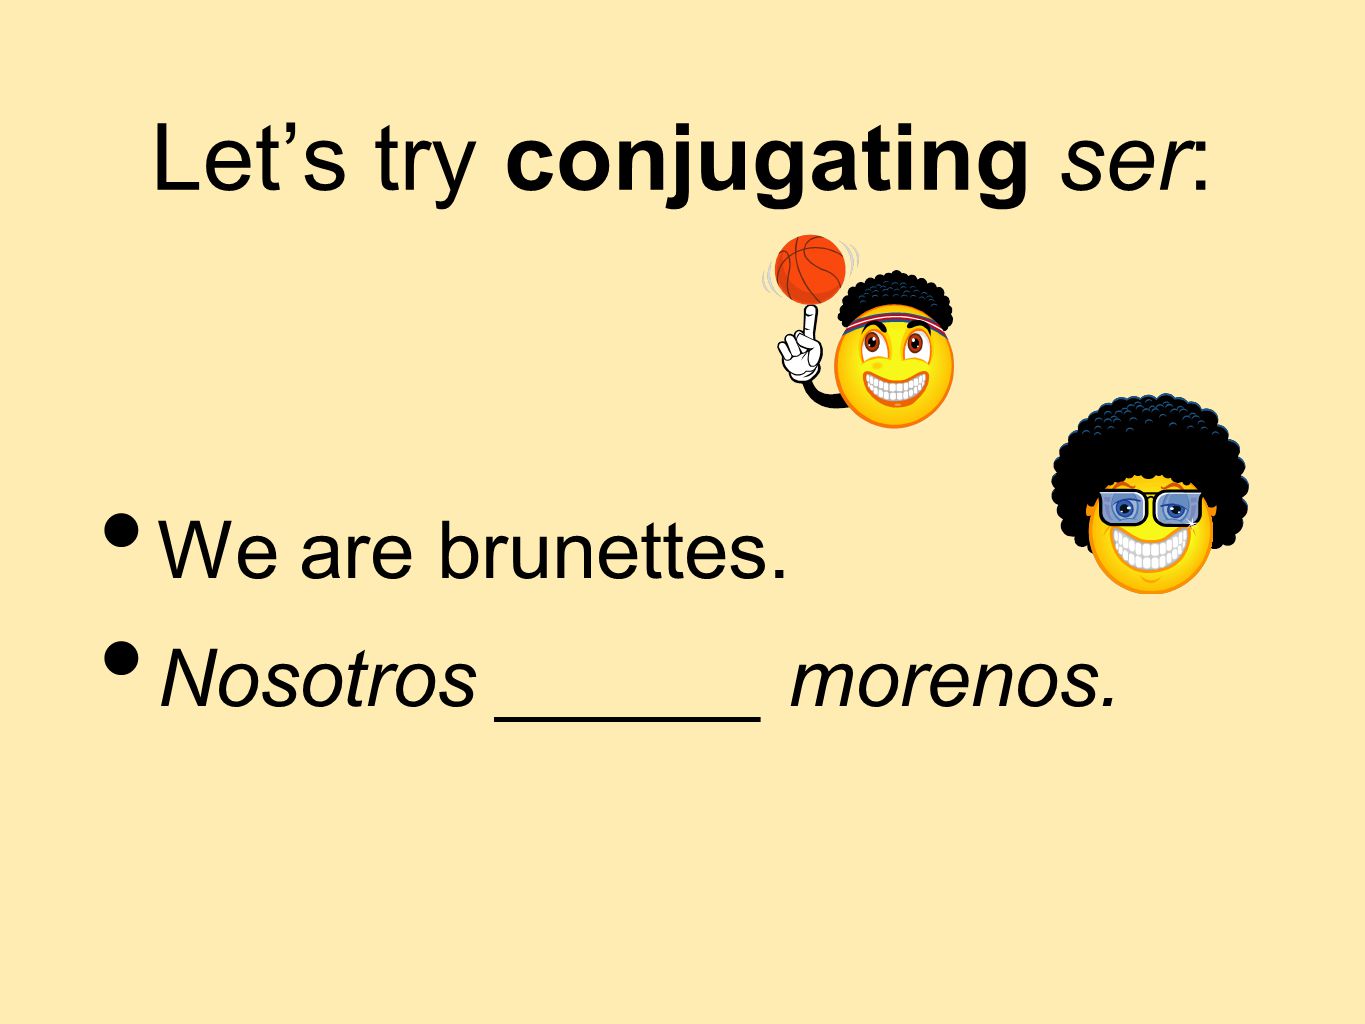 Let’s try conjugating ser: We are brunettes. Nosotros ______ morenos.